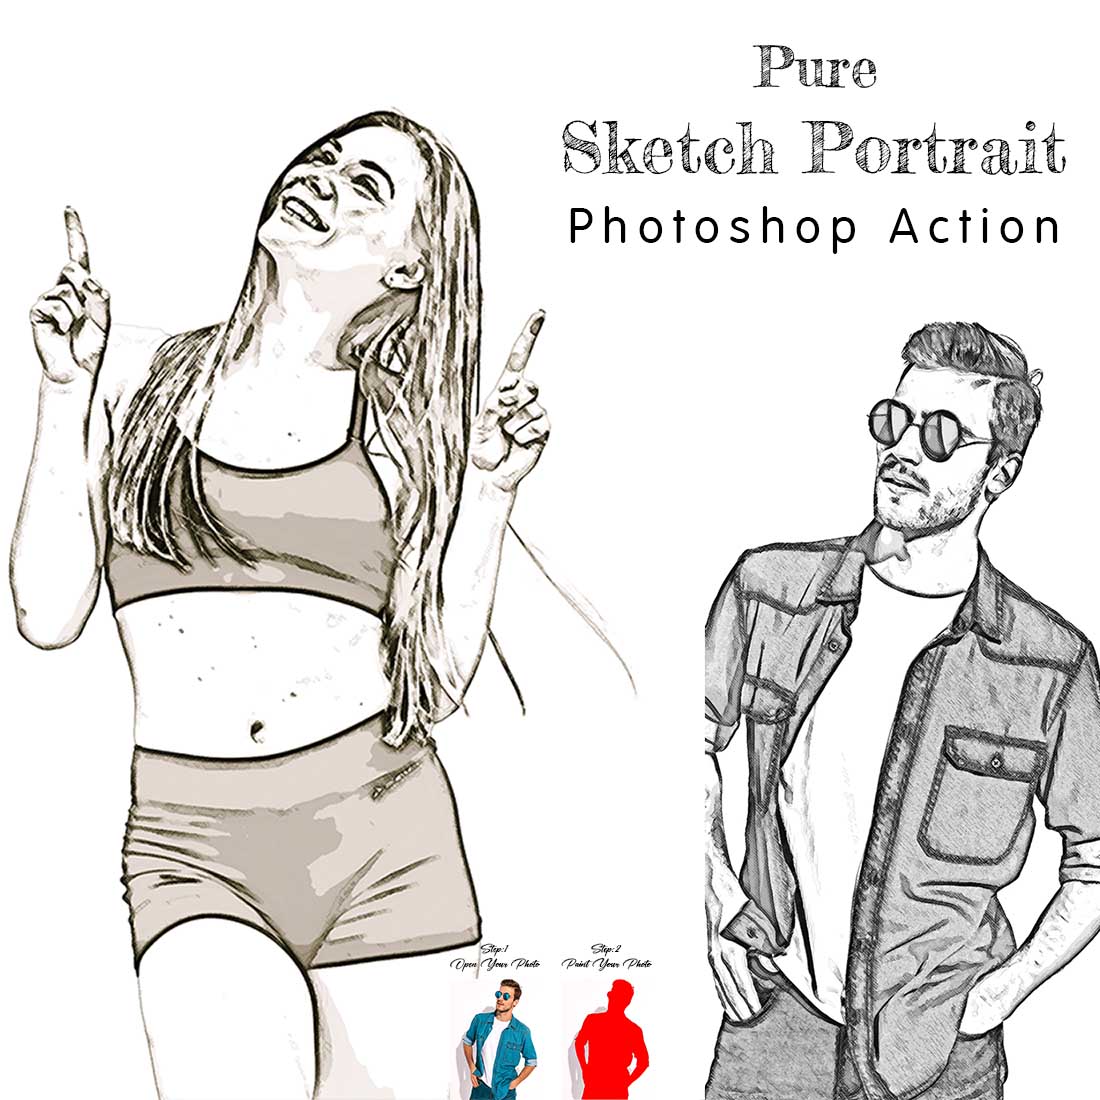 Pure Sketch Portrait Photoshop Action cover image.